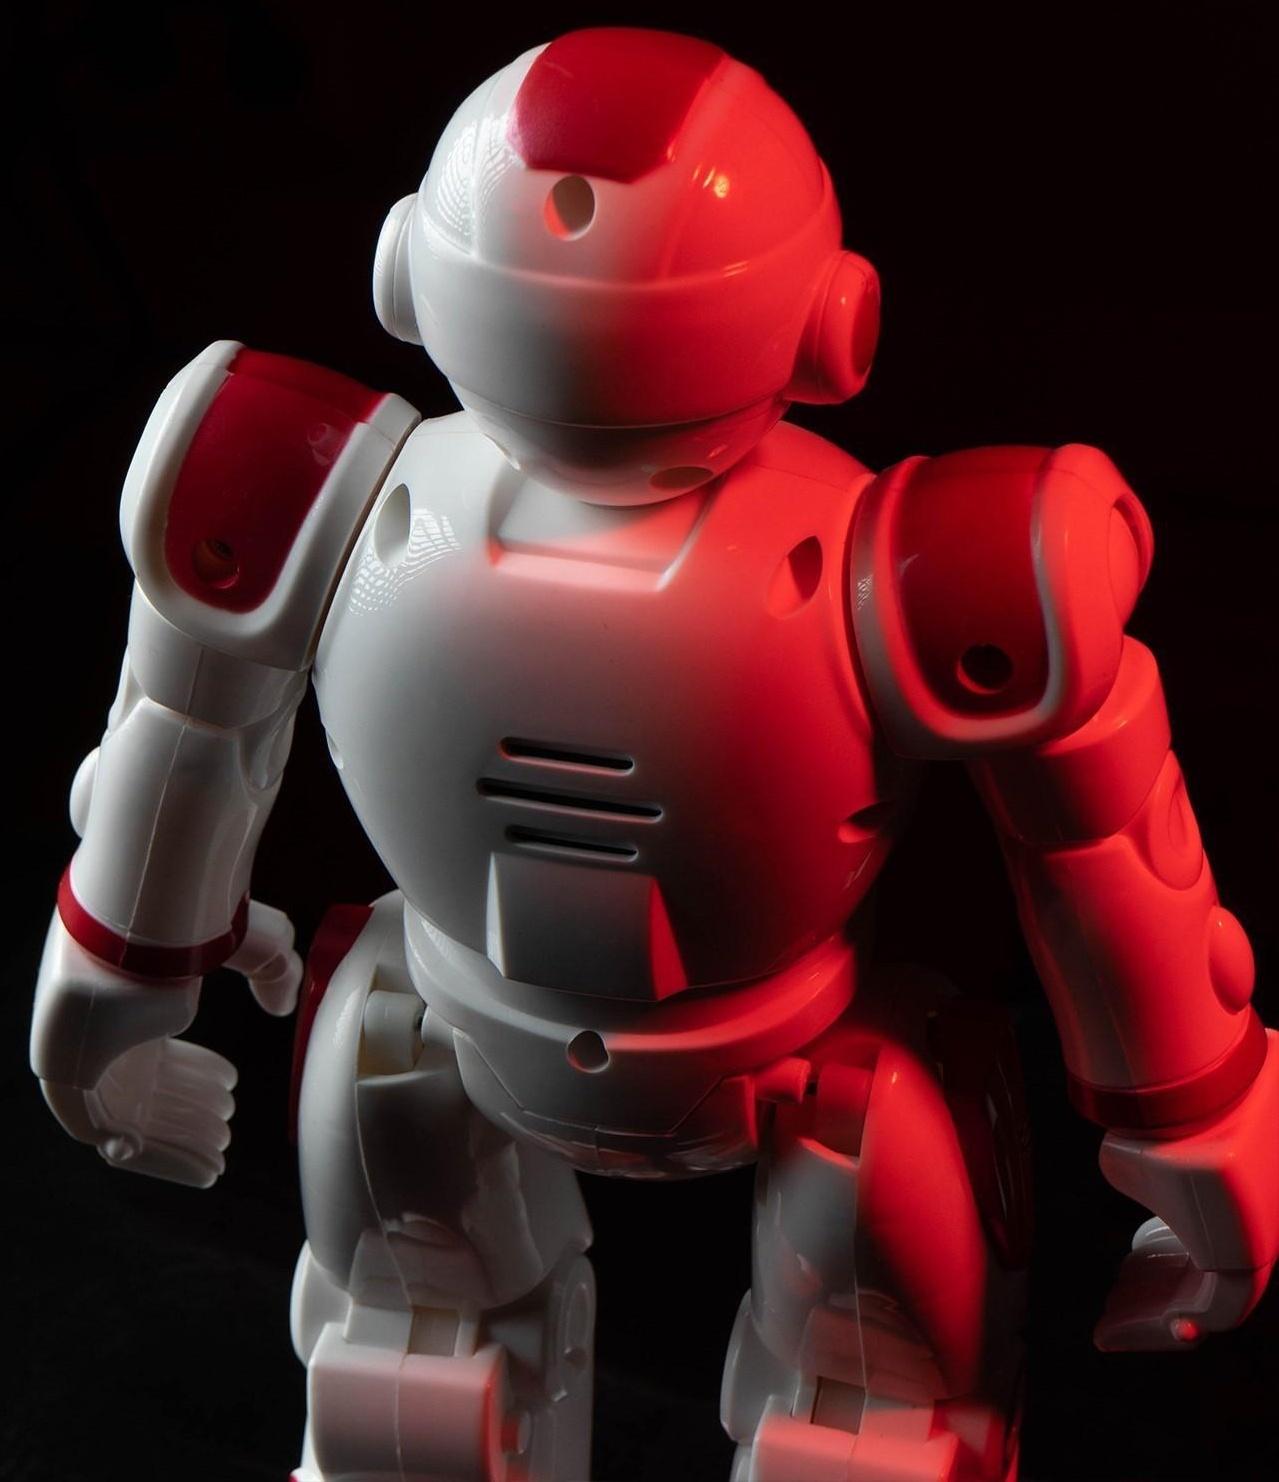 Робот-игрушка радиоуправляемый IQ BOT GRAVITONE, русское озвучивание, цвет красный